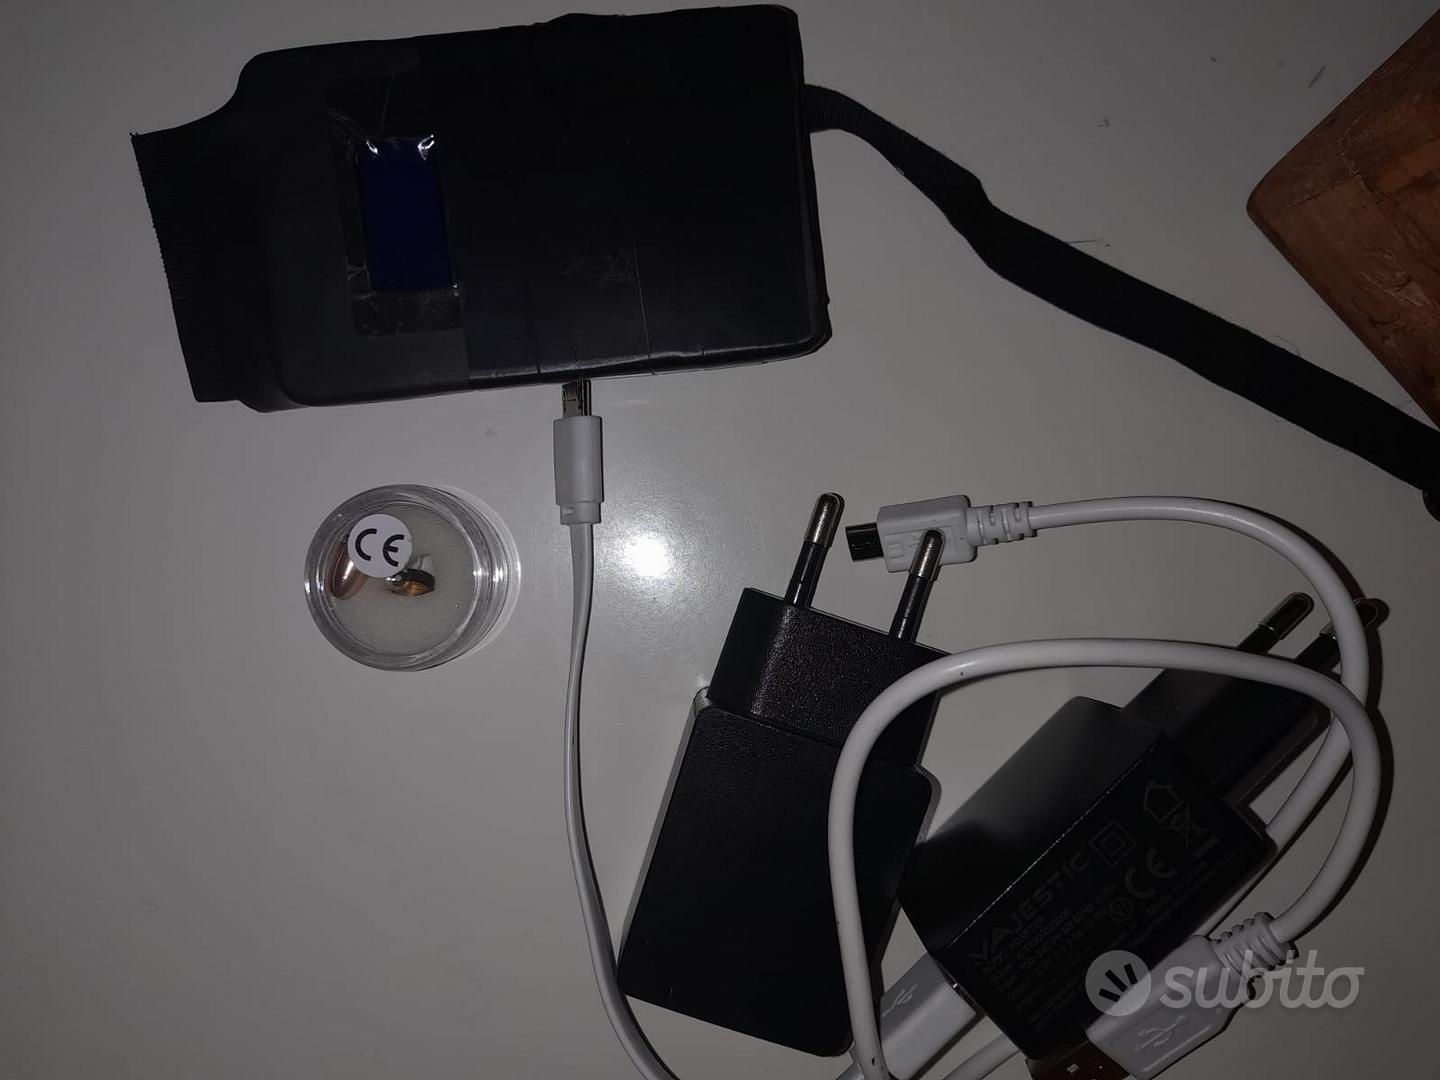 Kit Micro Auricolare GSM con Microcamera a Bottone - Audio/Video In vendita  a Milano